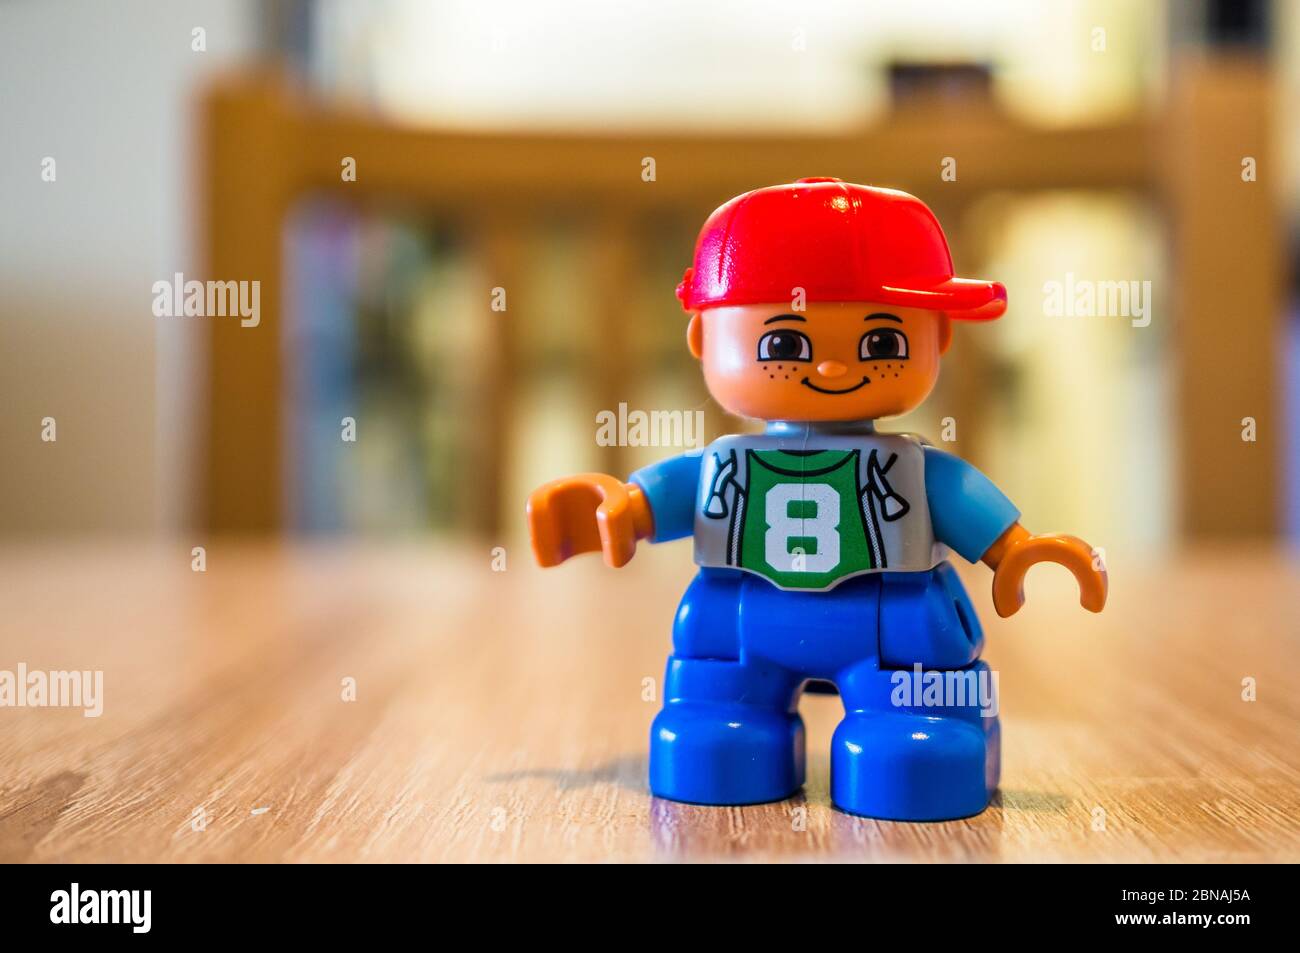 POZNAN, POLOGNE - 13 avril 2020 : petite figurine Lego Duplo avec le numéro  8 sur sa chemise, debout sur une table en bois, sur fond de foyer doux  Photo Stock - Alamy